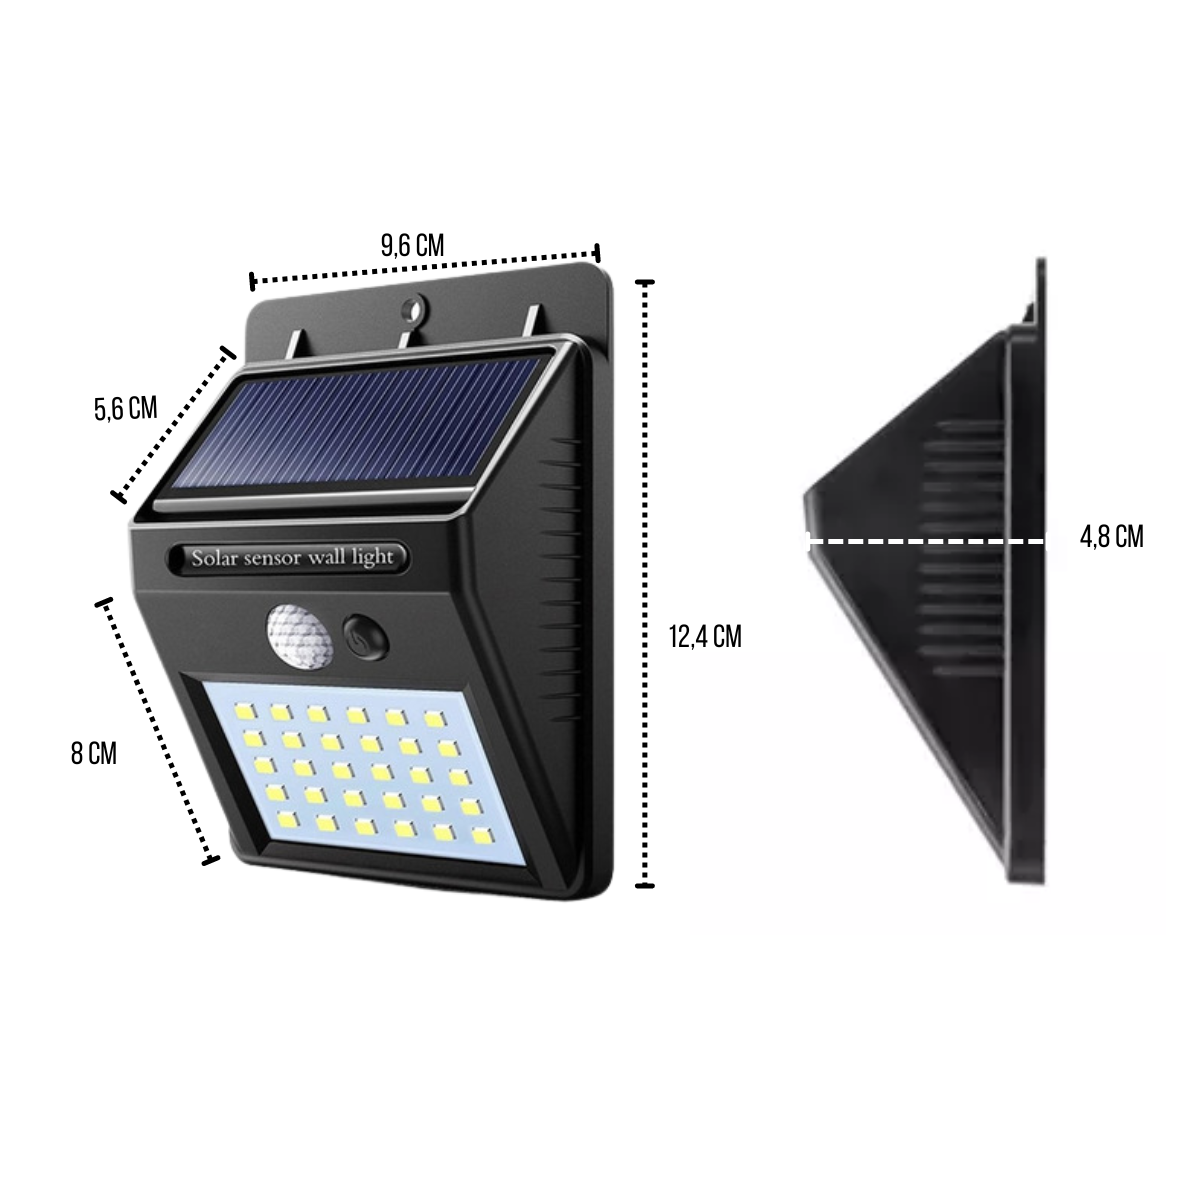 Kit 2 Luminárias Led Arandela Solar Luz Com Sensor De Presença Movimento Para Paredes Muros Quintais - 2